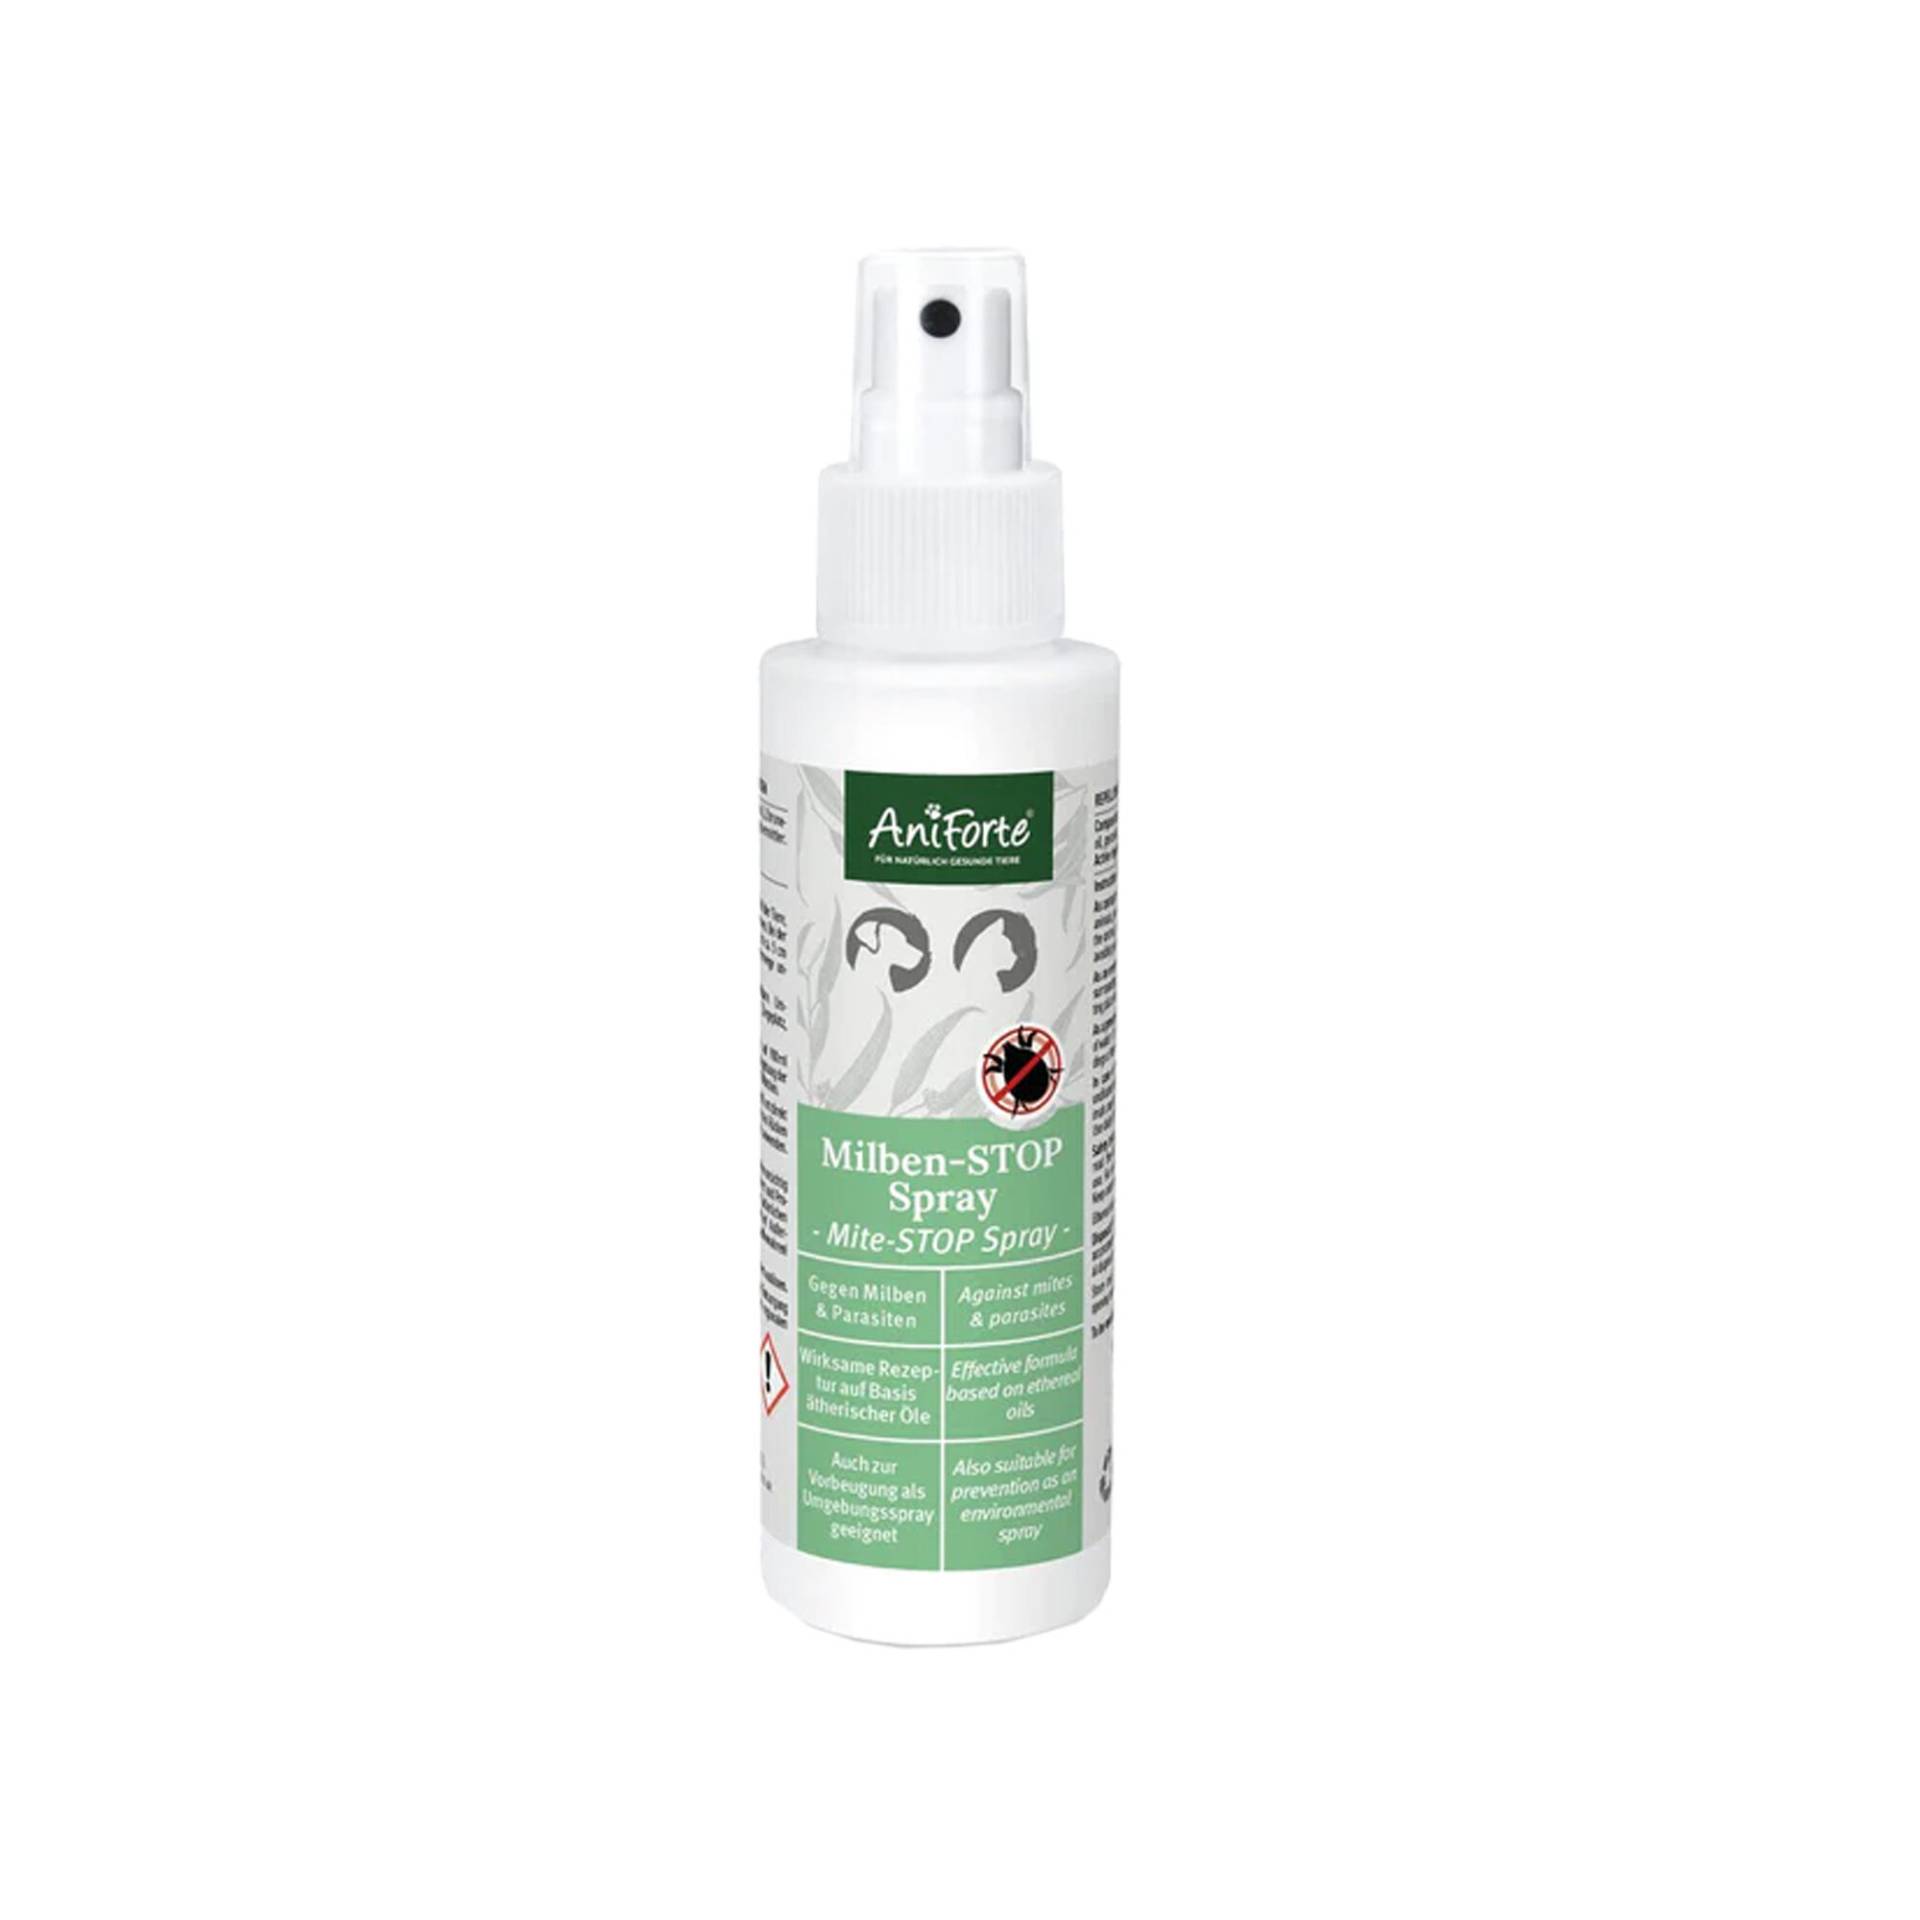 AniForte Milben STOP Spray - 100 ml von AniForte